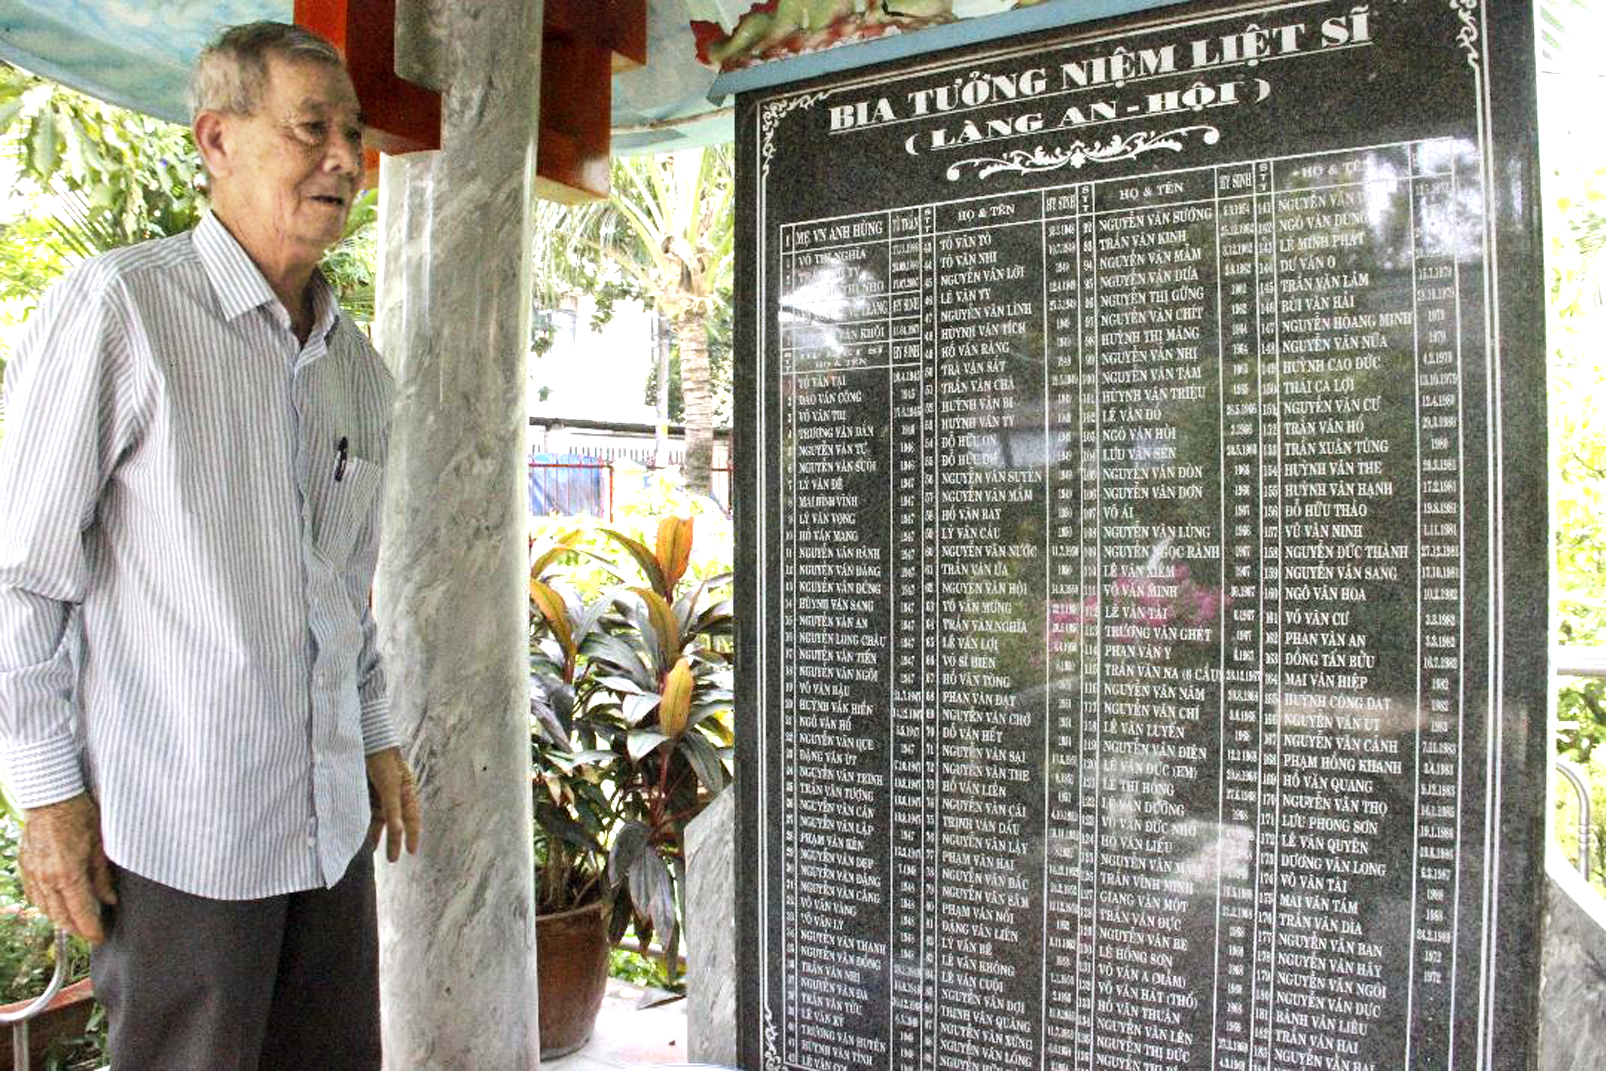 Ông Phạm Văn Hoa bên bia tưởng niệm liệt sĩ làng An Hội được đặt trong đình An Hội nơi ông làm phó ban quản trị